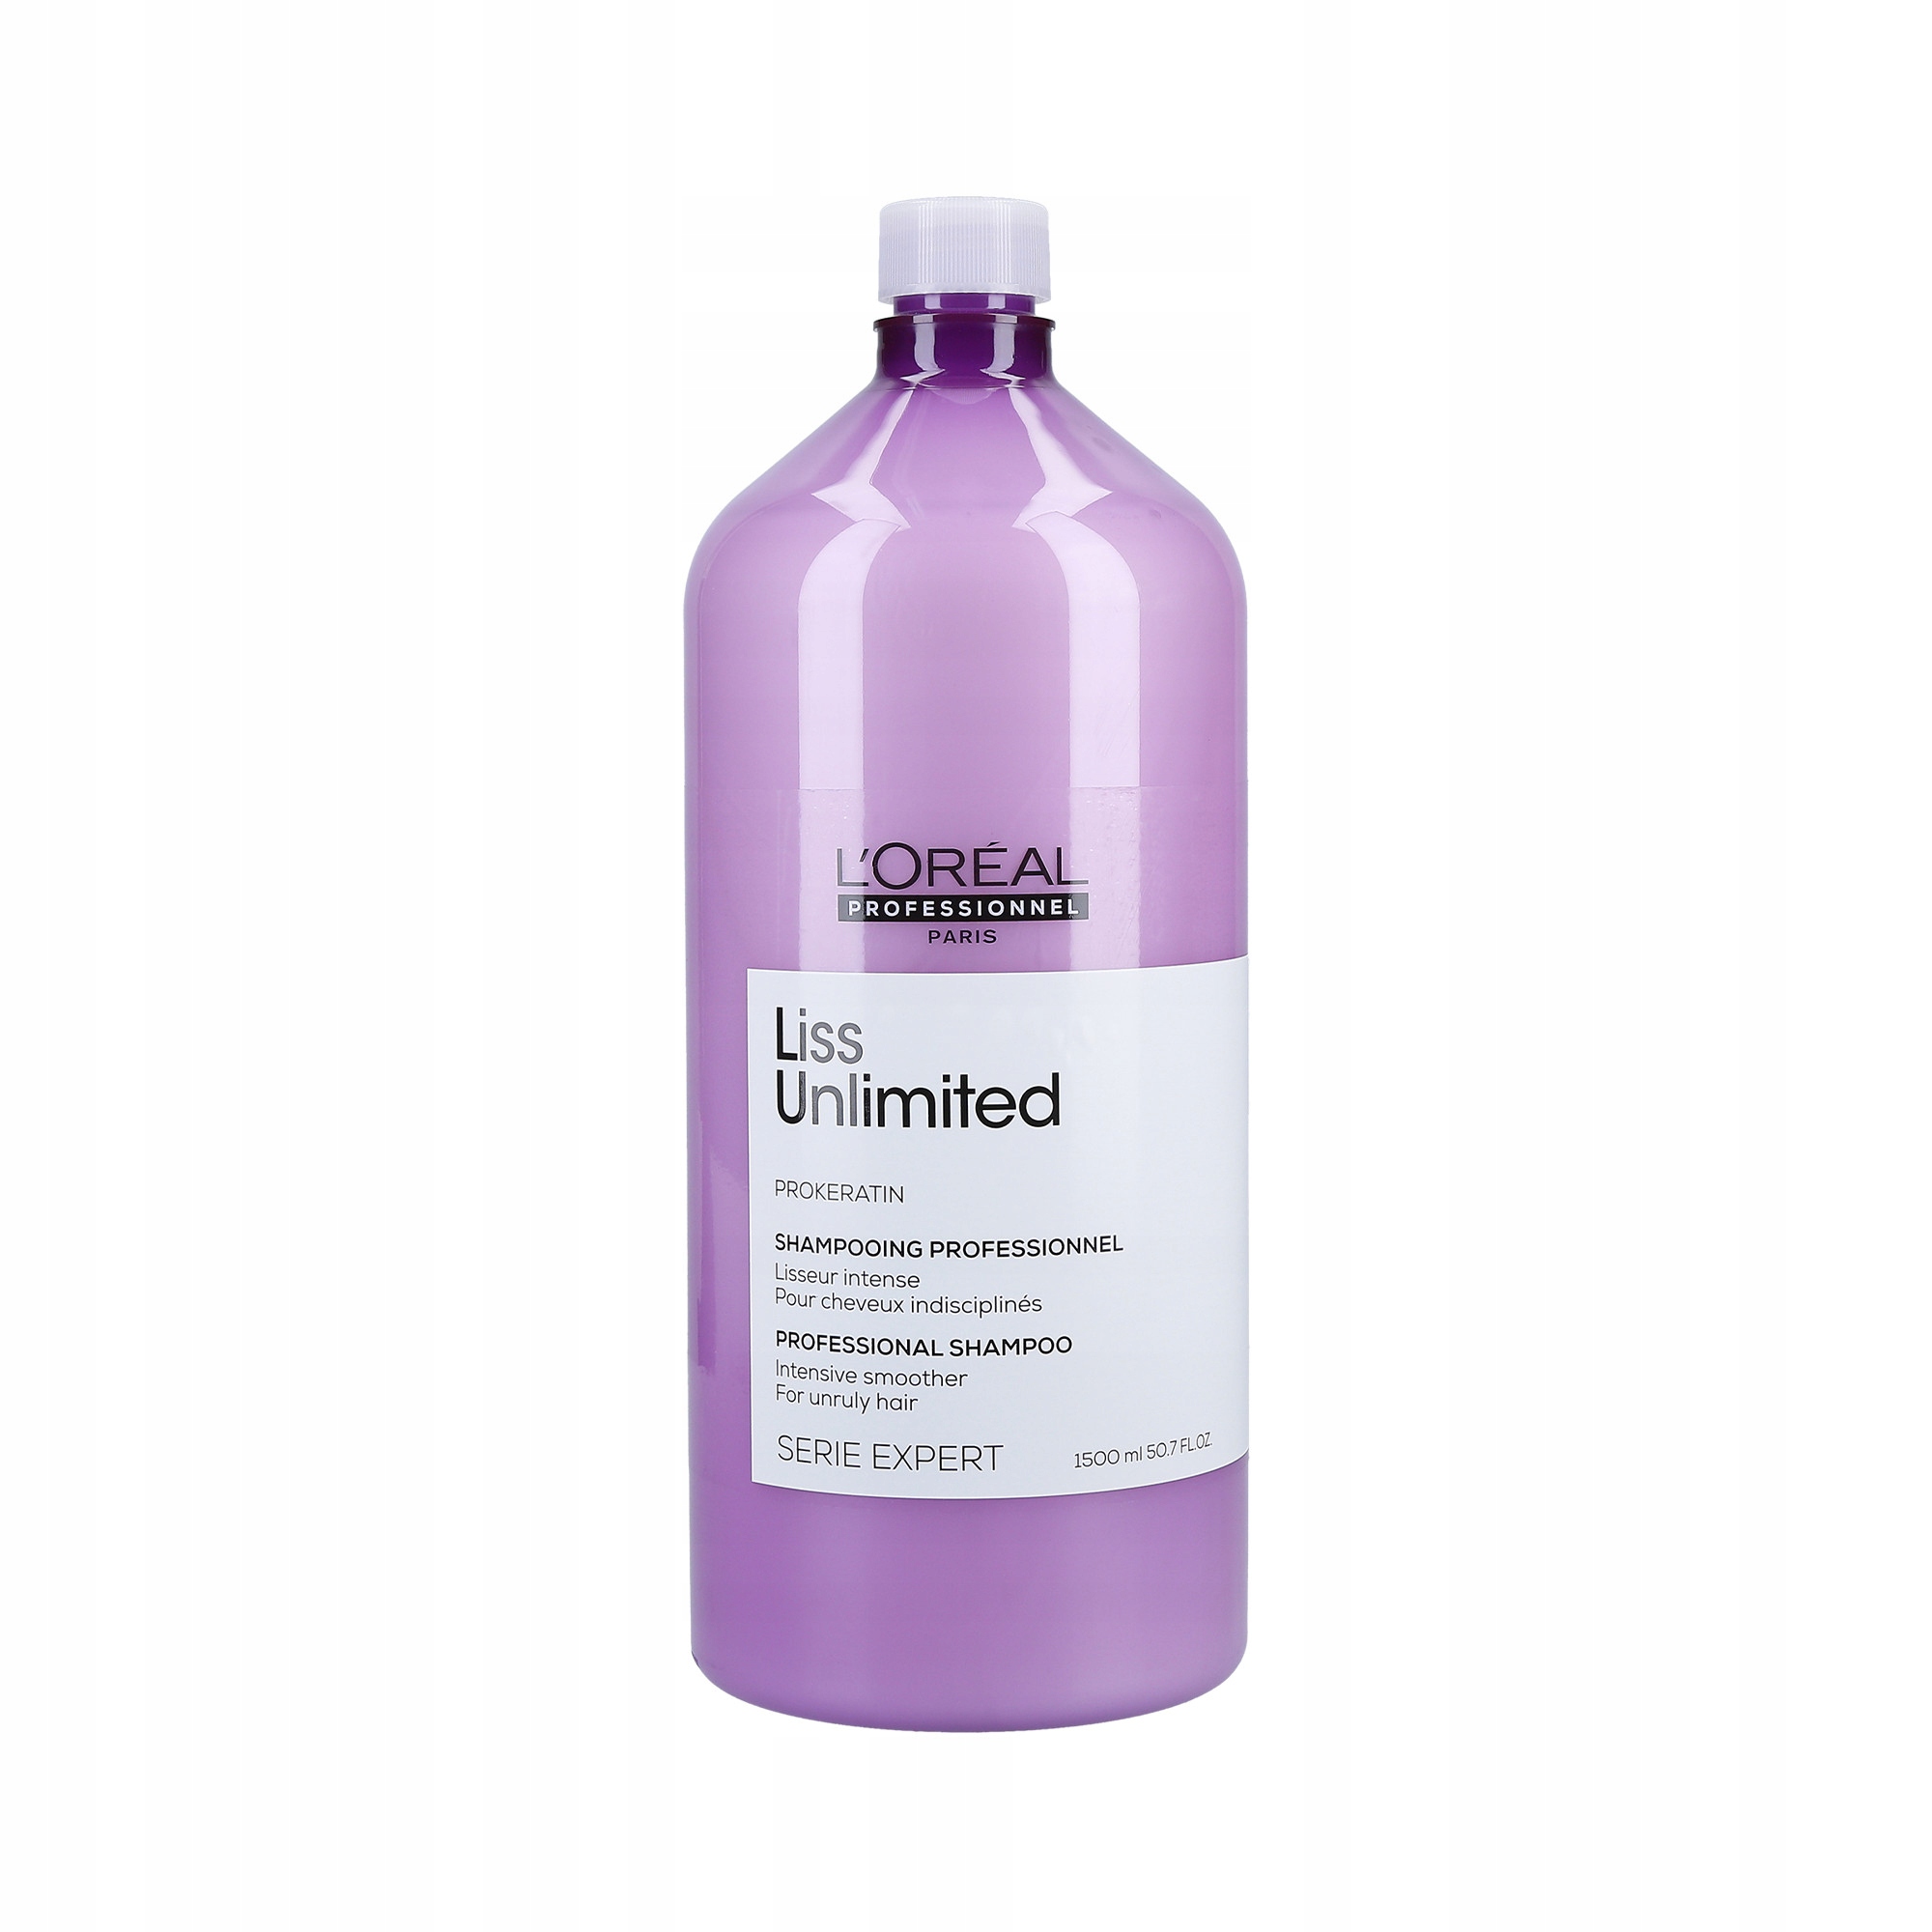 loreal pro classics color szampon przy zabiegu koloryzacji